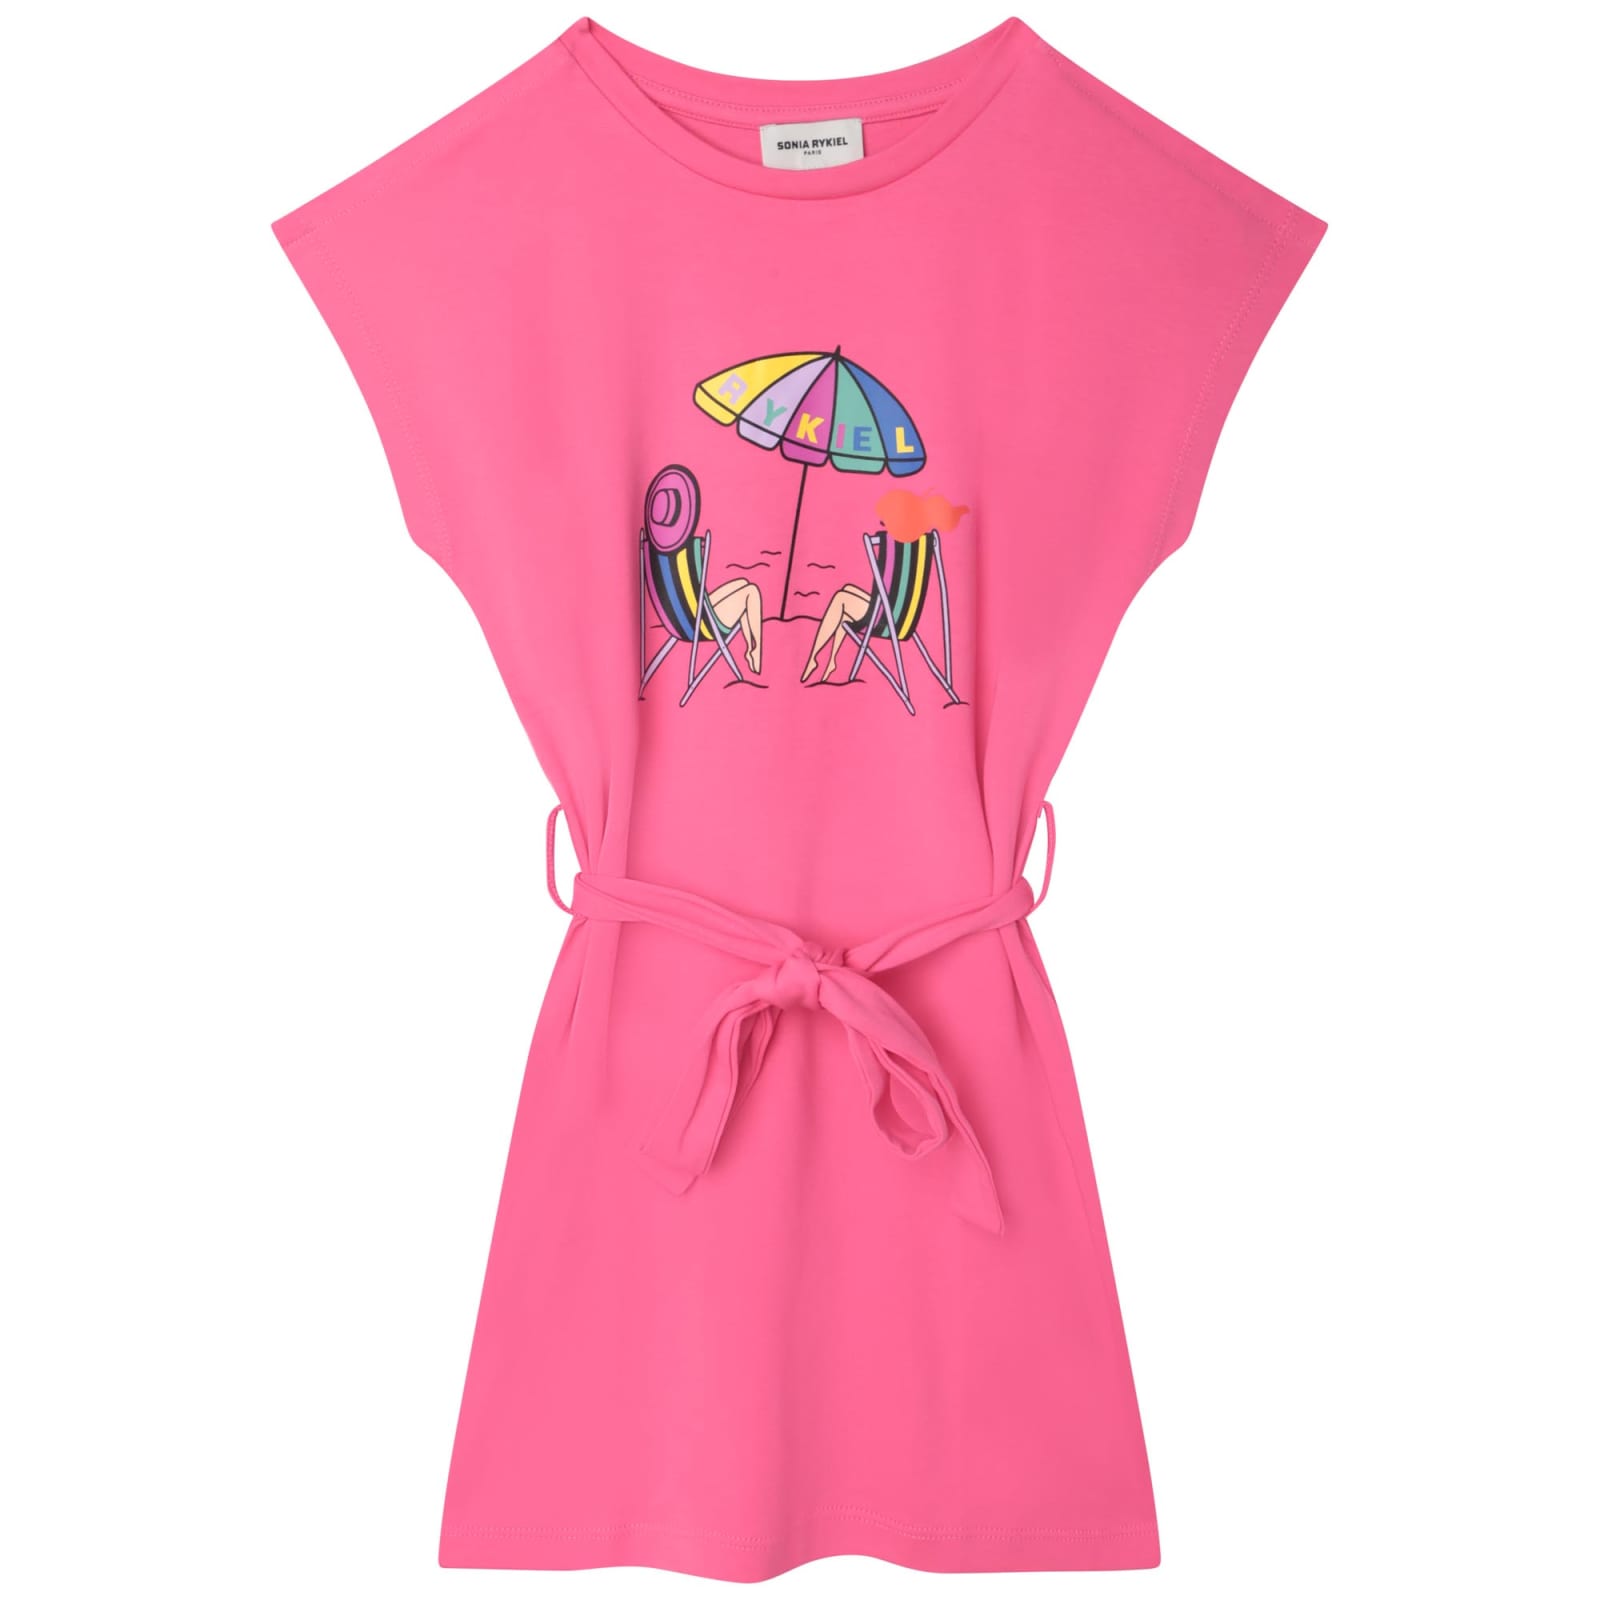 Sonia Rykiel Kids' Dress With Print In Fucsia